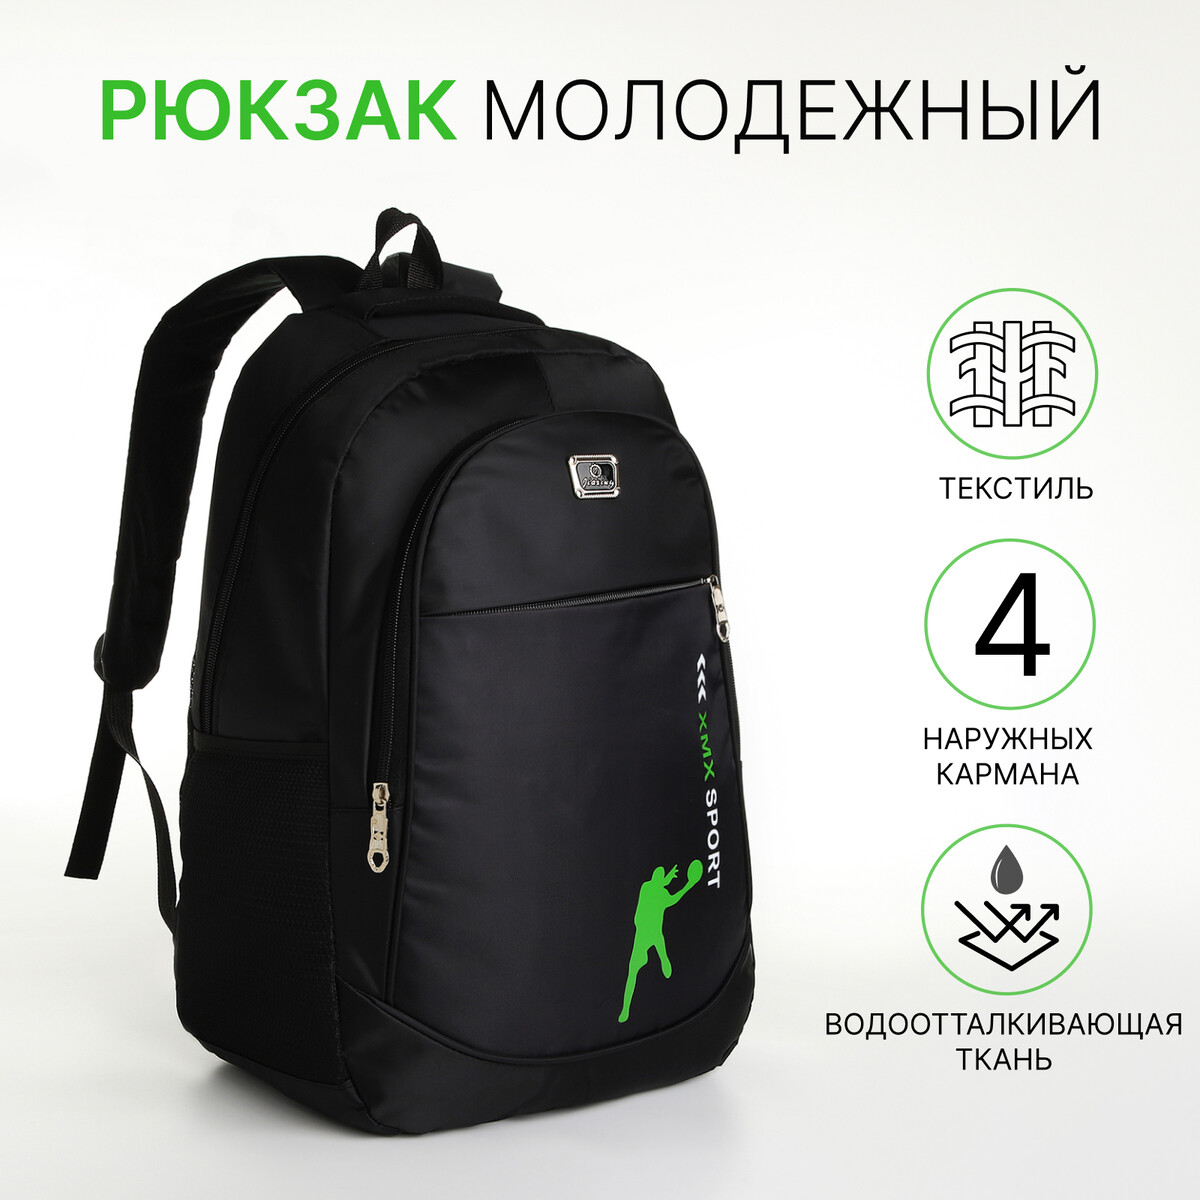 Рюкзак молодежный на молнии, 4 кармана, цвет черный/зеленый рюкзак молодежный из текстиля на молнии 2 кармана зеленый